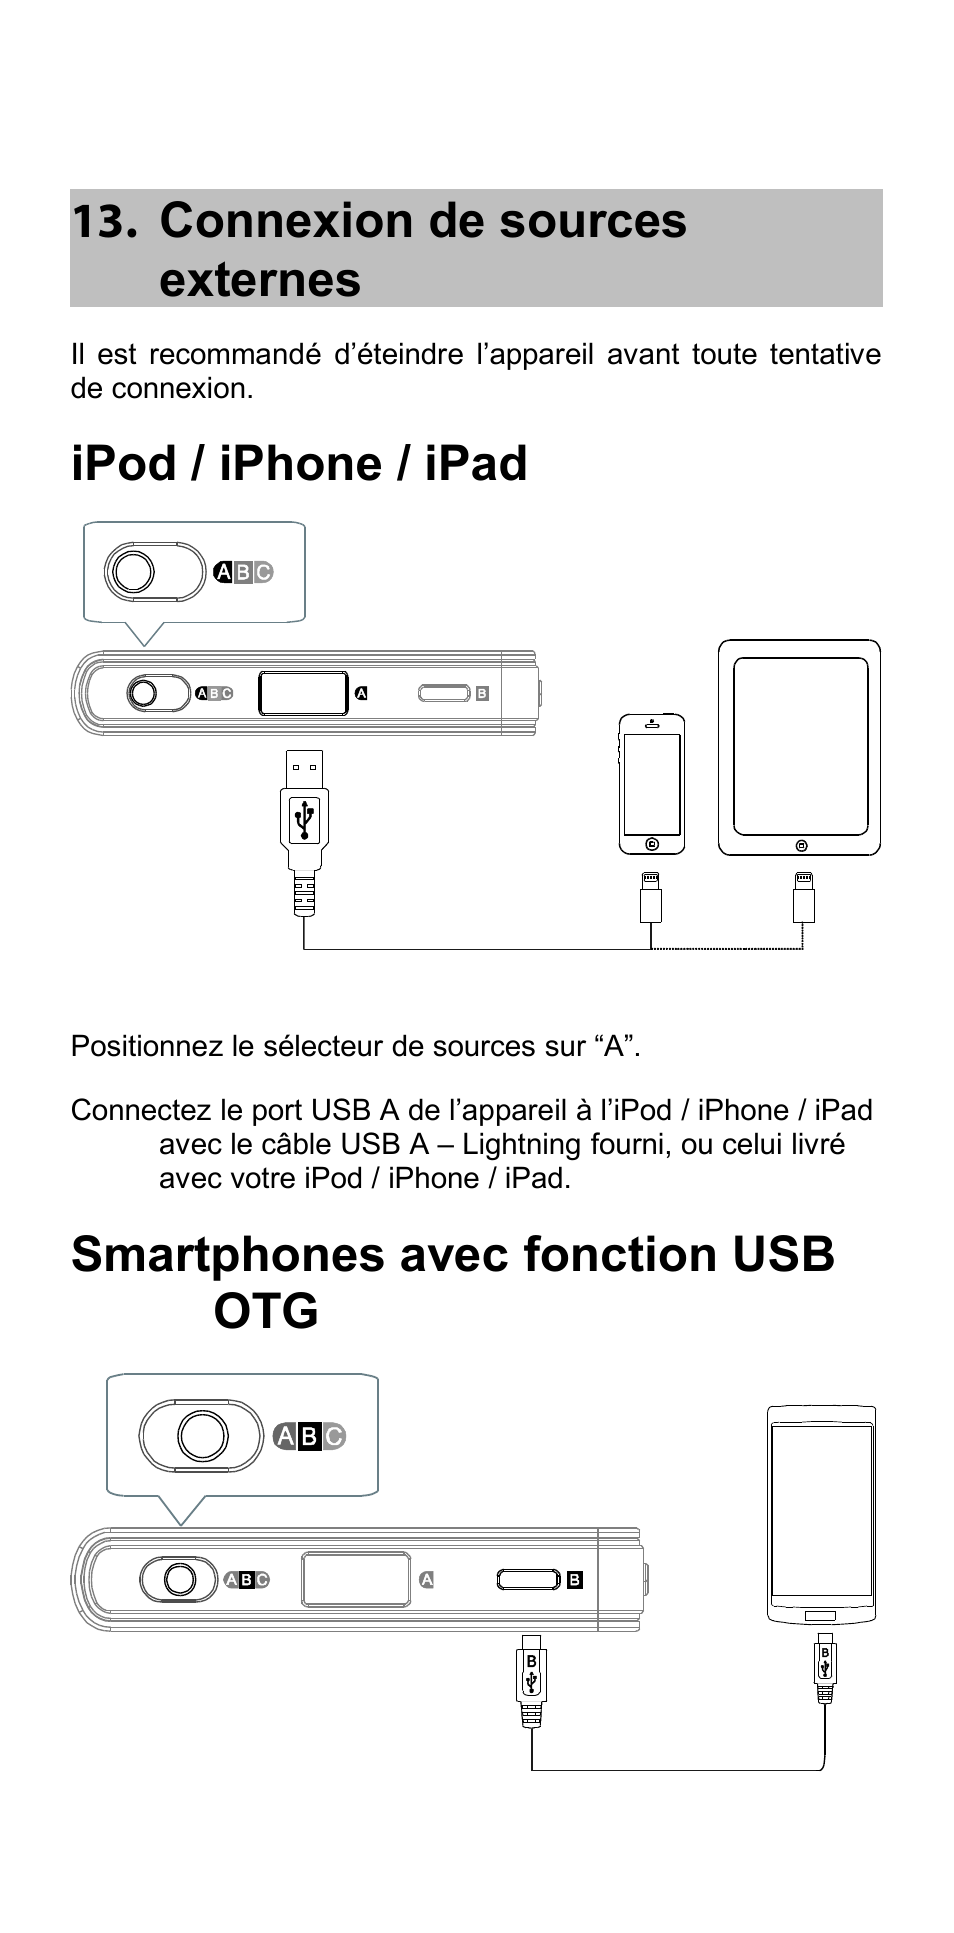 Connexion de sources externes, Ipod / iphone / ipad, Smartphones avec fonction usb otg | Oppo HA-2 Manuel d'utilisation | Page 15 / 28